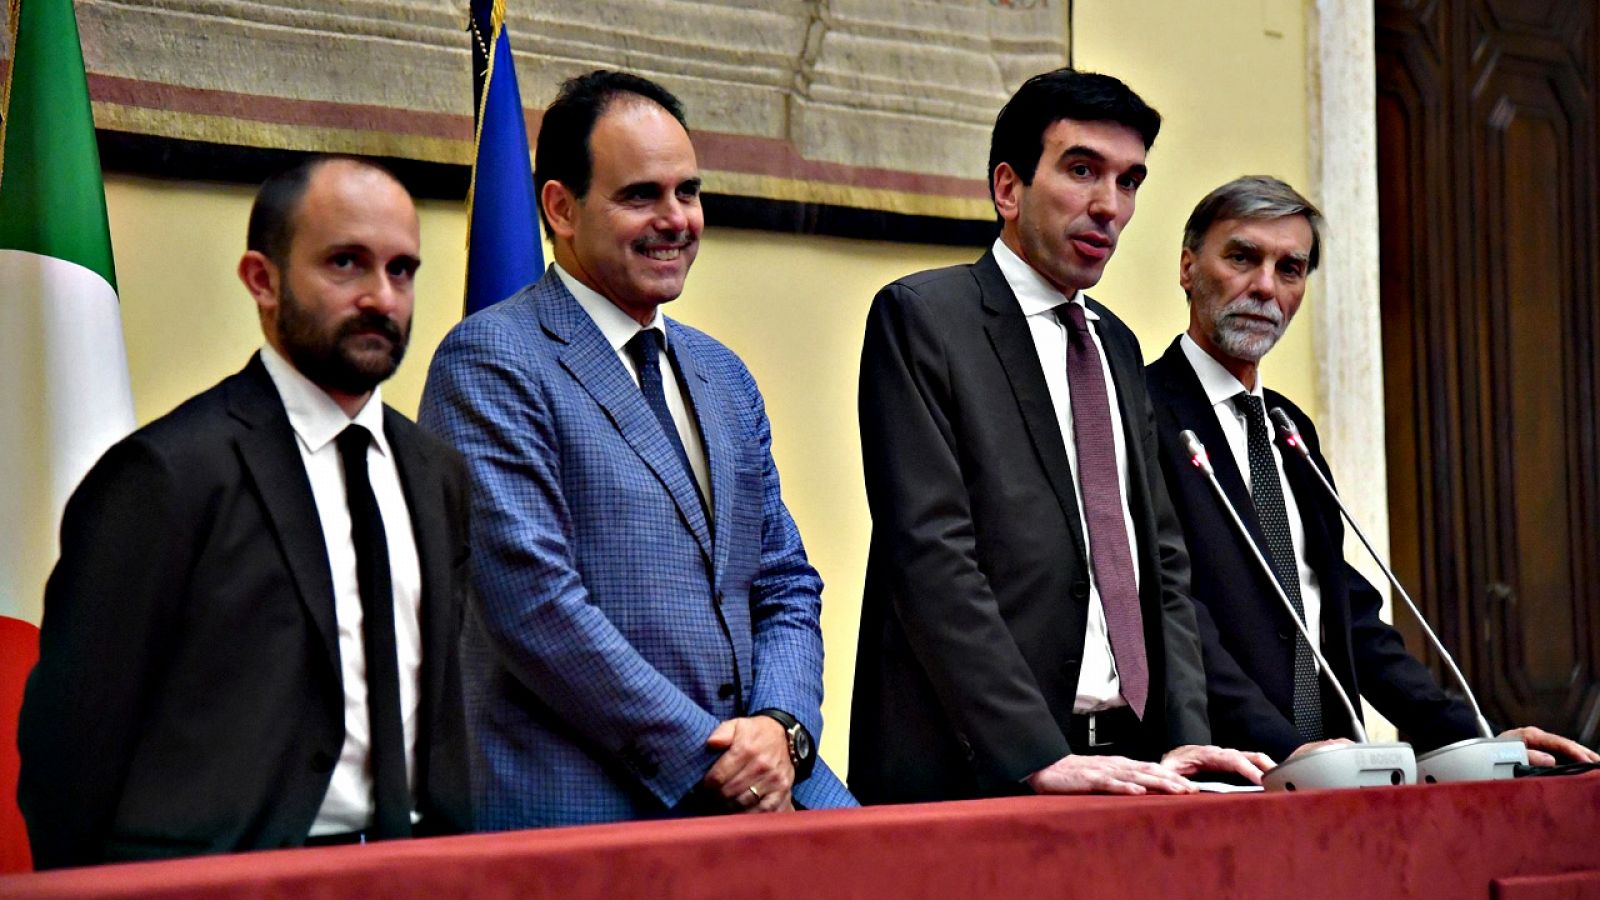 El líder interino del Partido Democrático, Maurizio Martina (segundo por la derecha), habla con la prensa tras reunirse con Roberto Fico, mediador en los intentos de formar gobierno en Italia